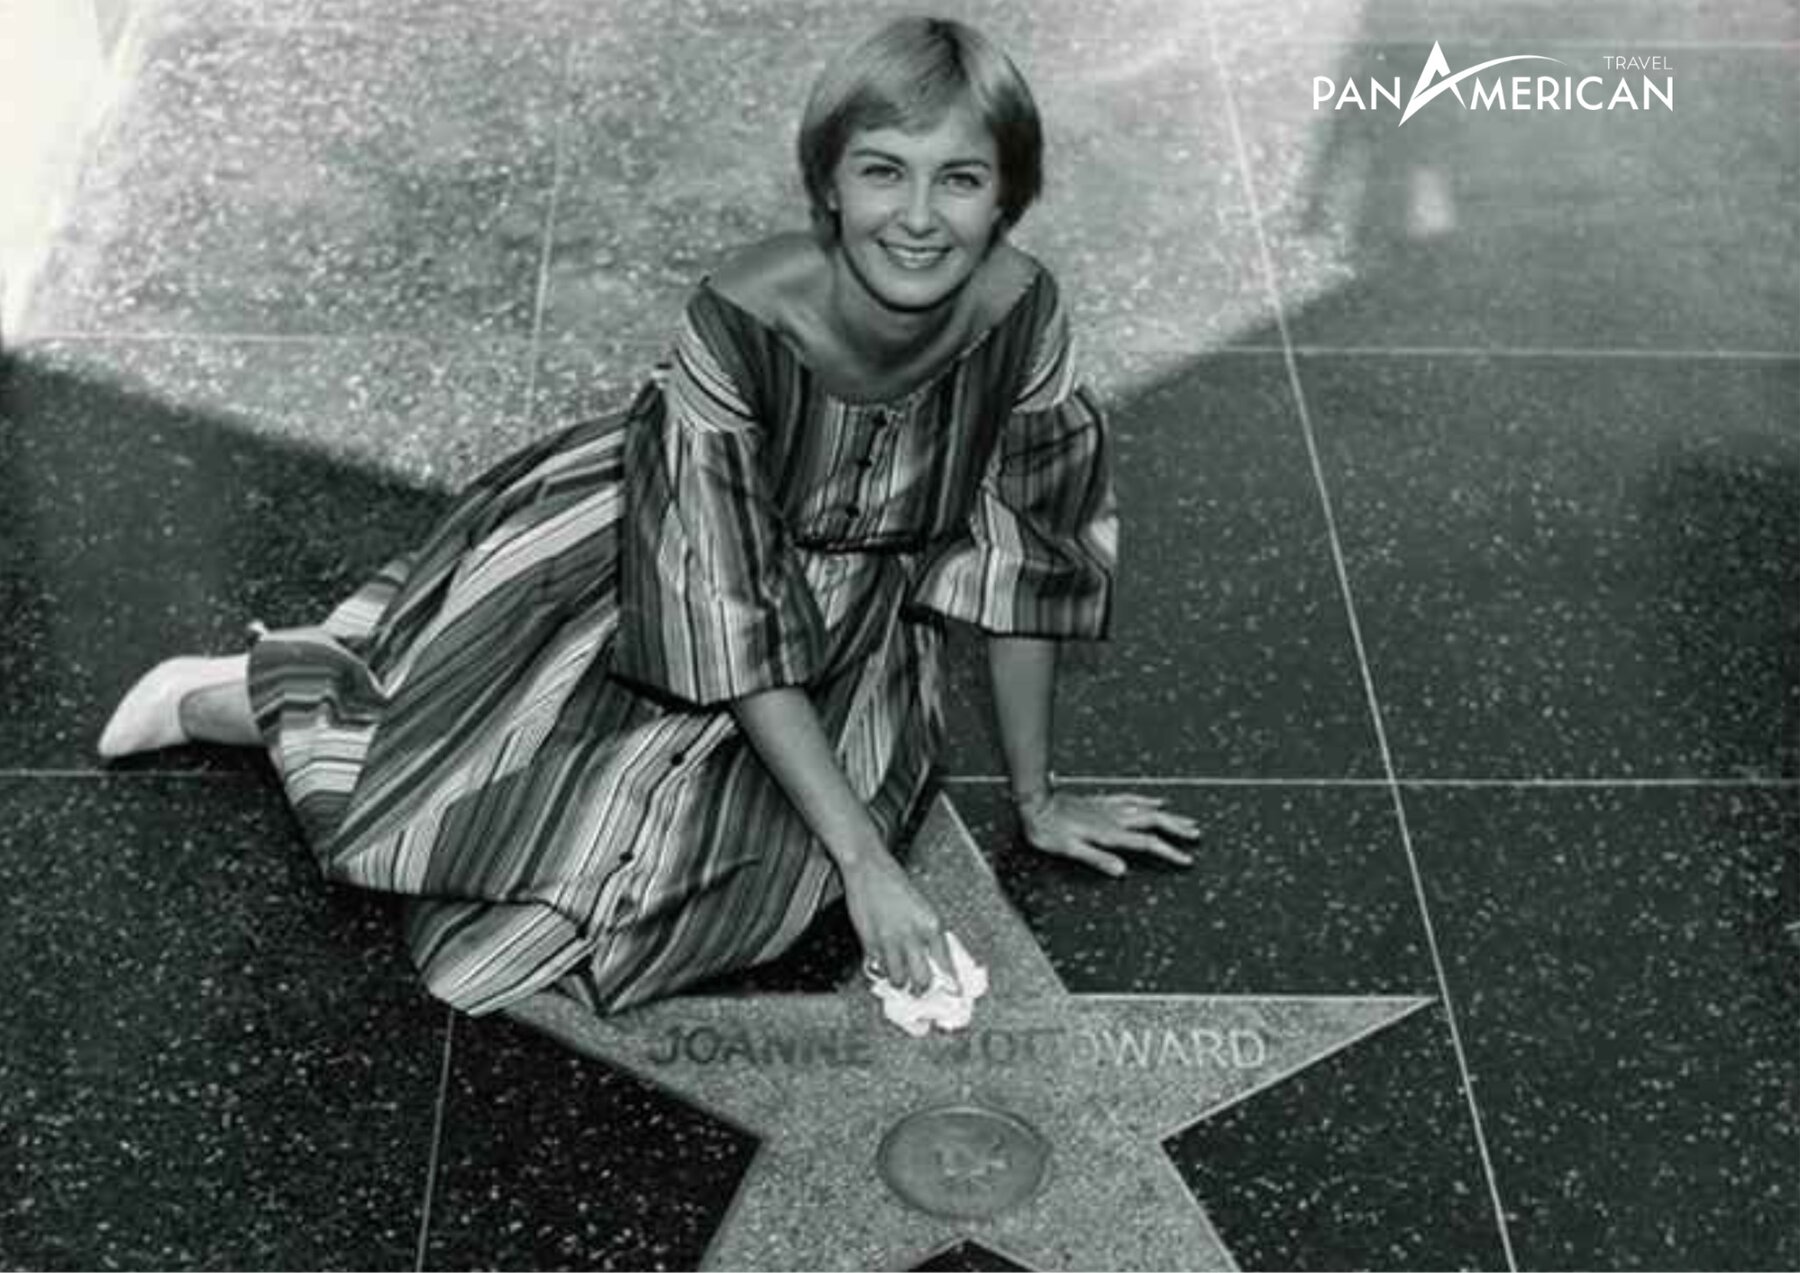 Ngôi sao đầu tiên trên Hollywood Walk of Frame thuộc về Joanne Woodward